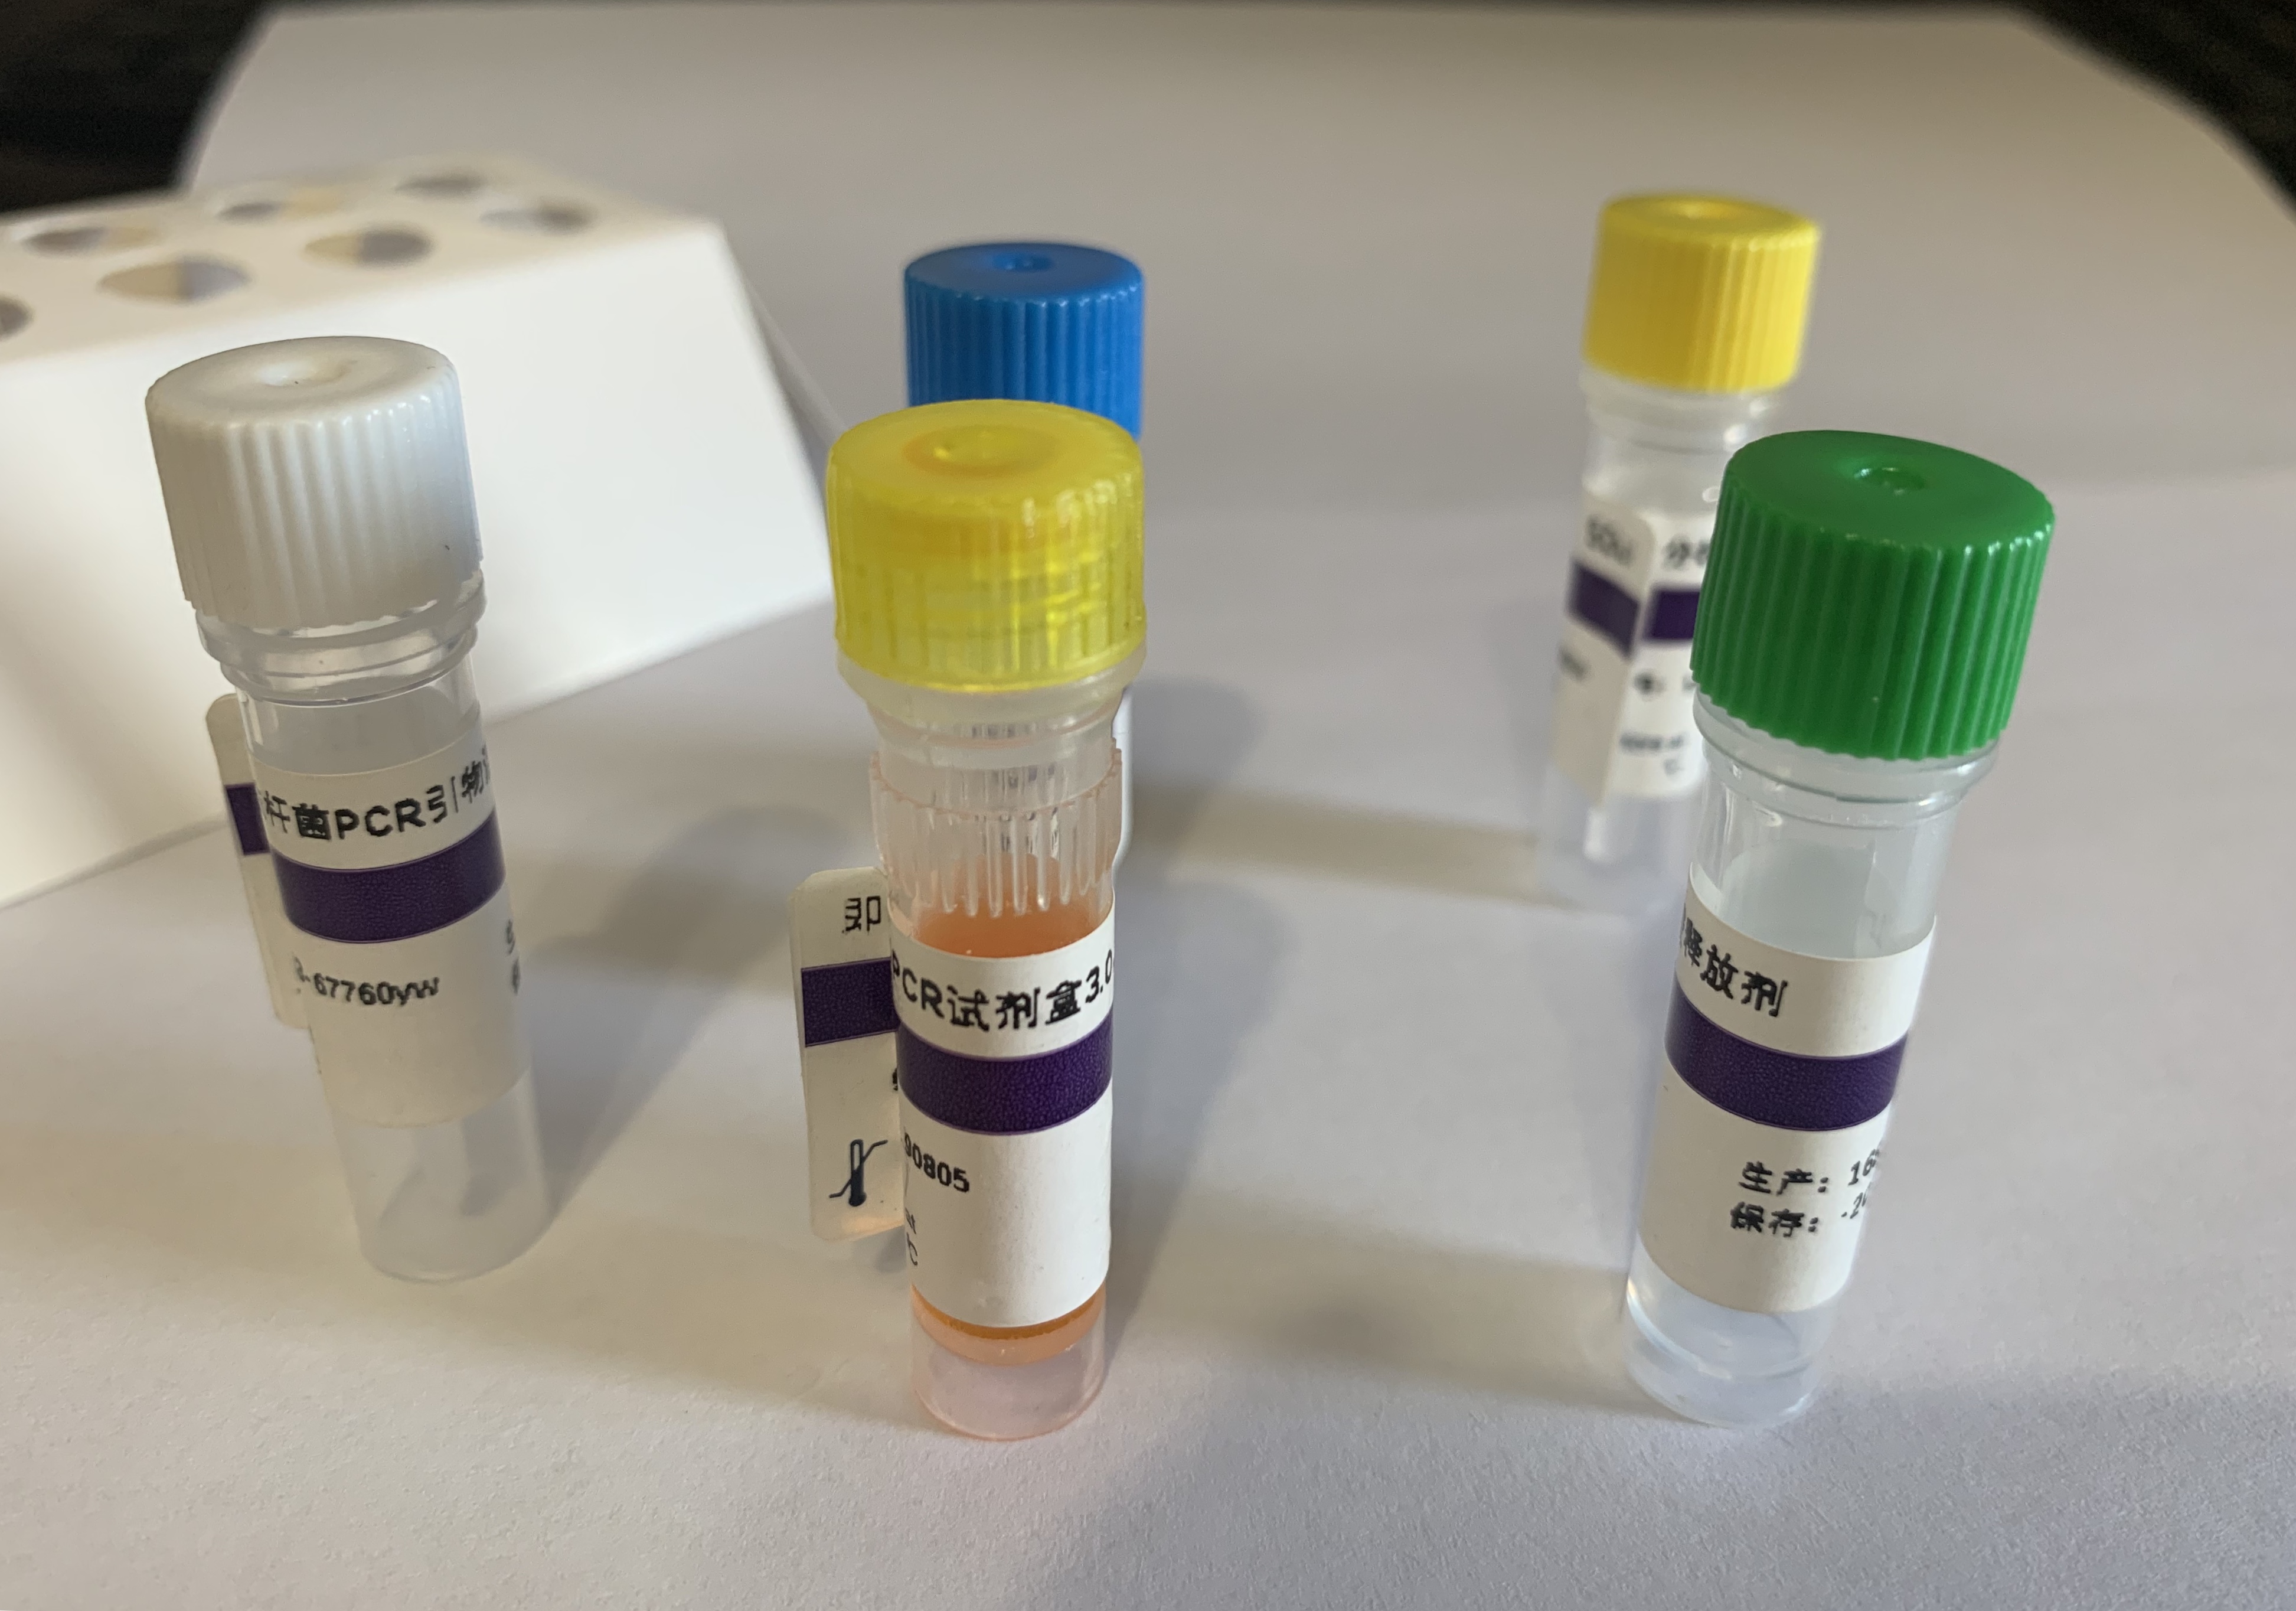 鲍肌肉萎缩症病毒PCR试剂盒